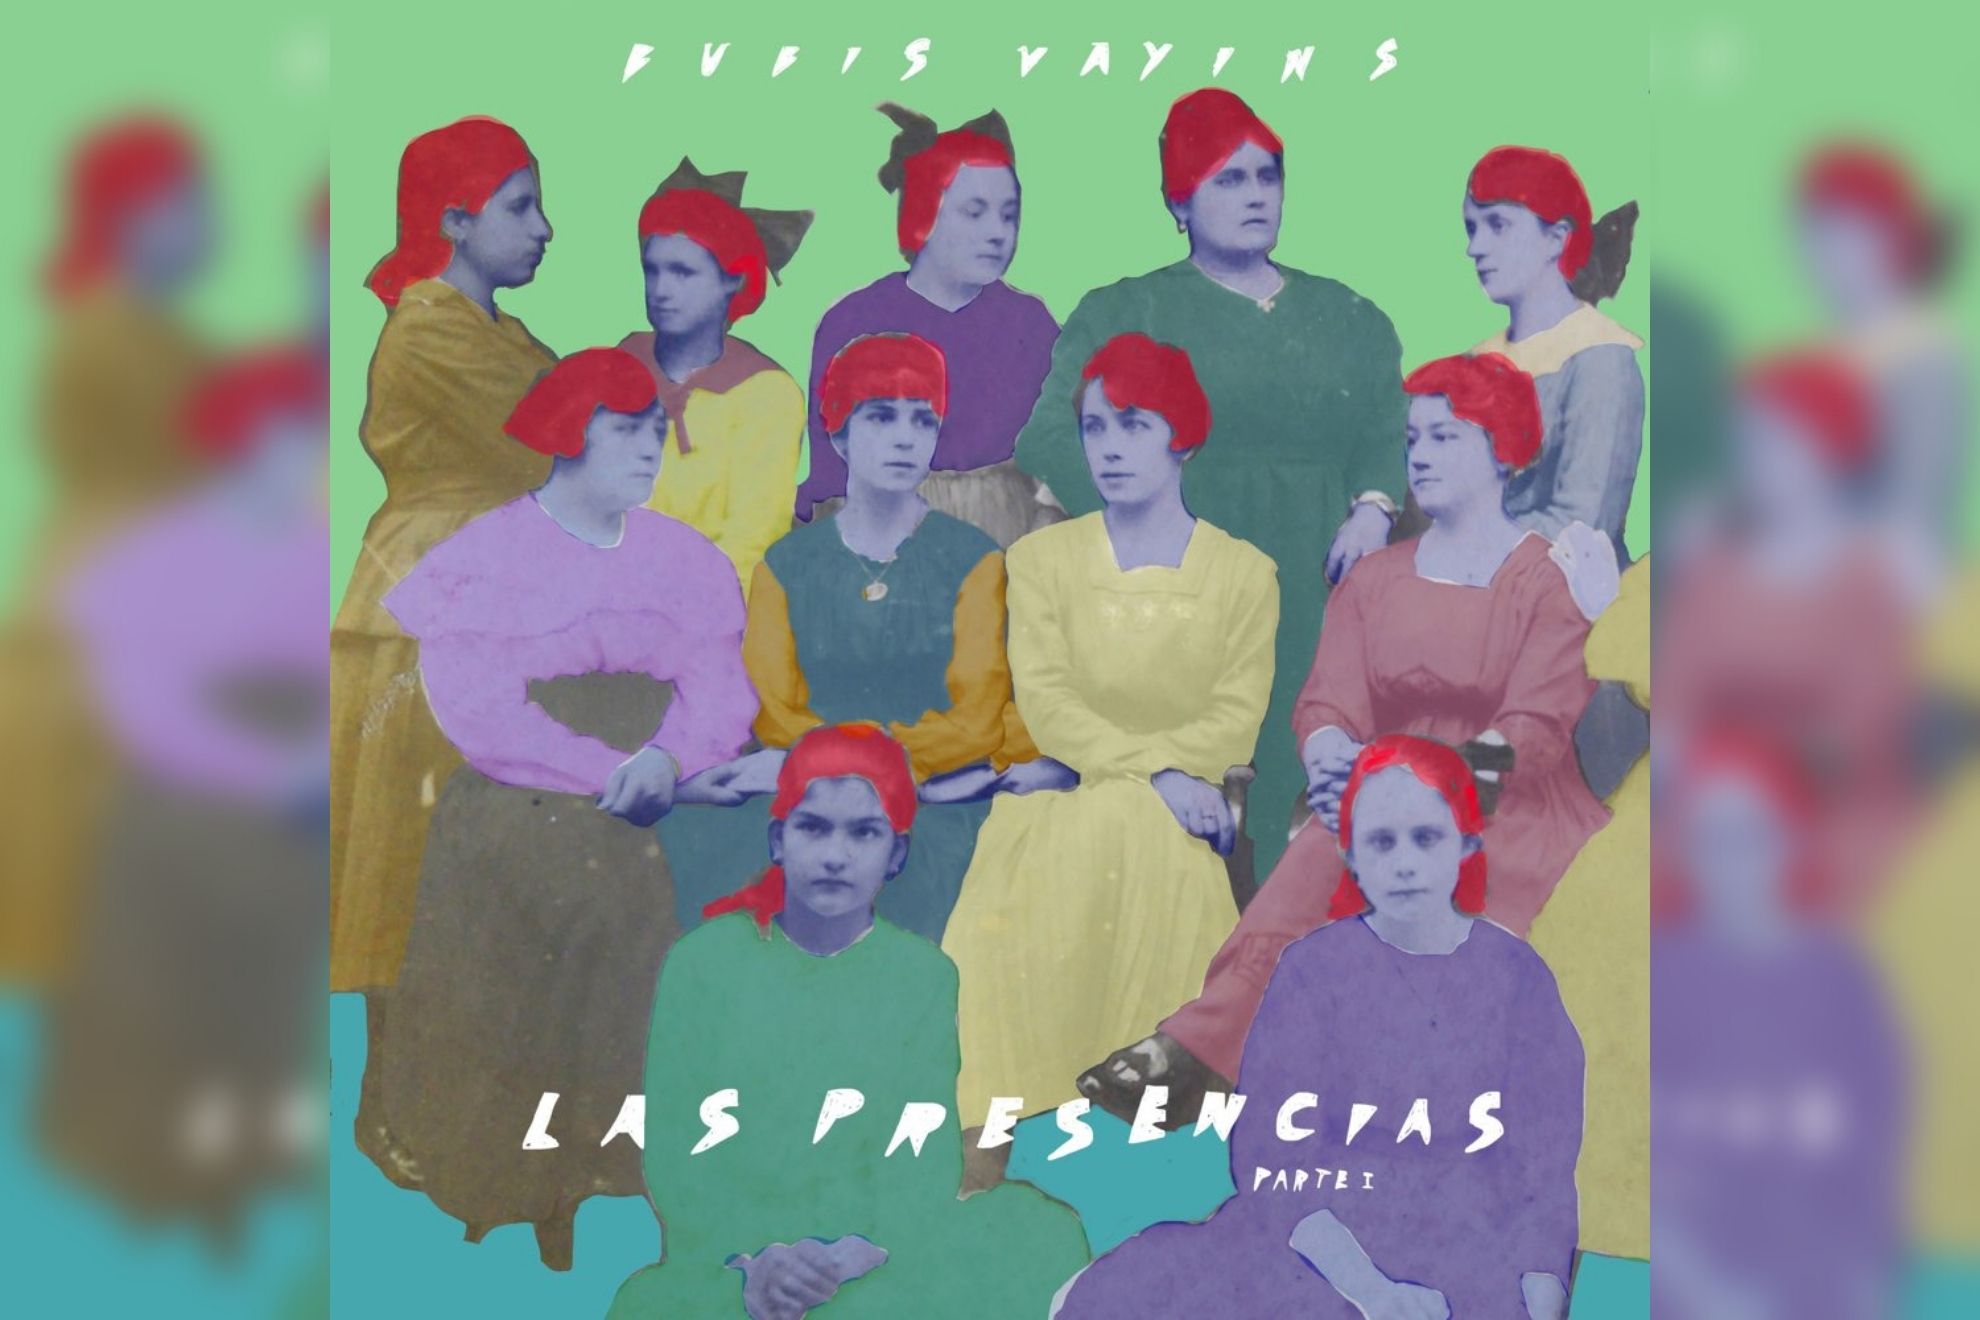 Bubis Vayins asoma su nuevo disco con “Las presencias, pt. I”